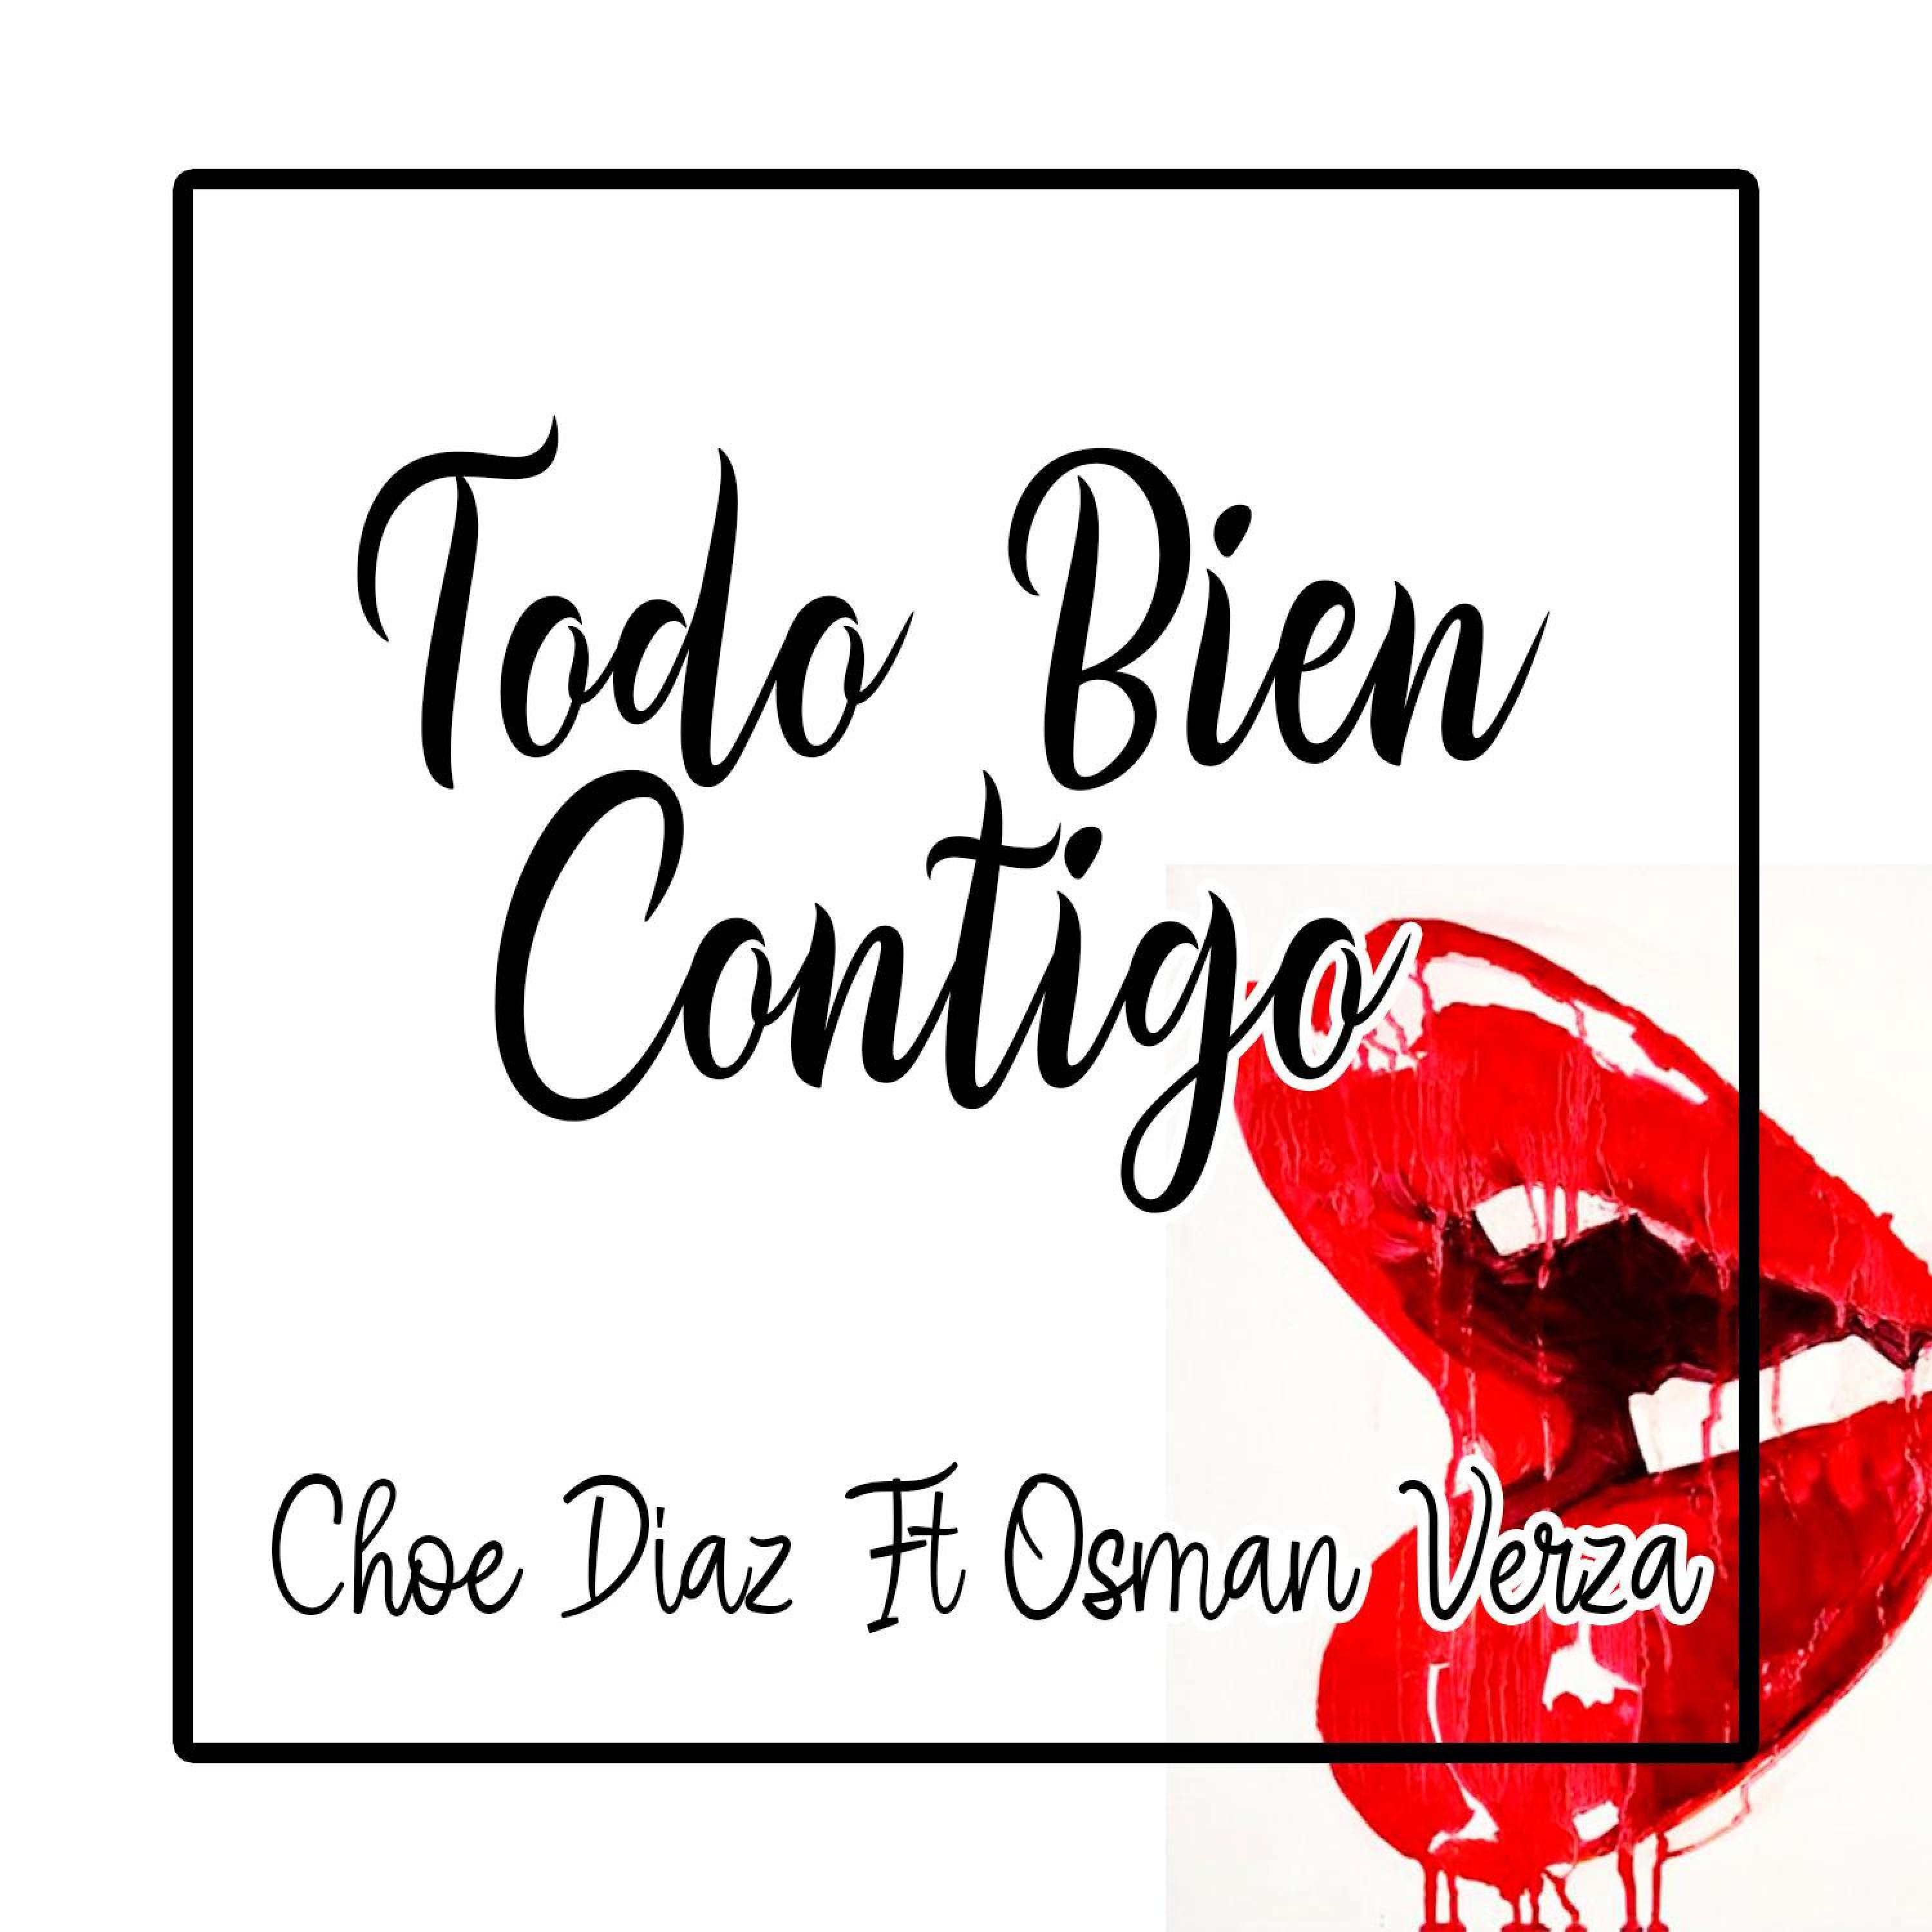 Choe Diaz - Todo Bien Contigo (feat. Osman Verza)